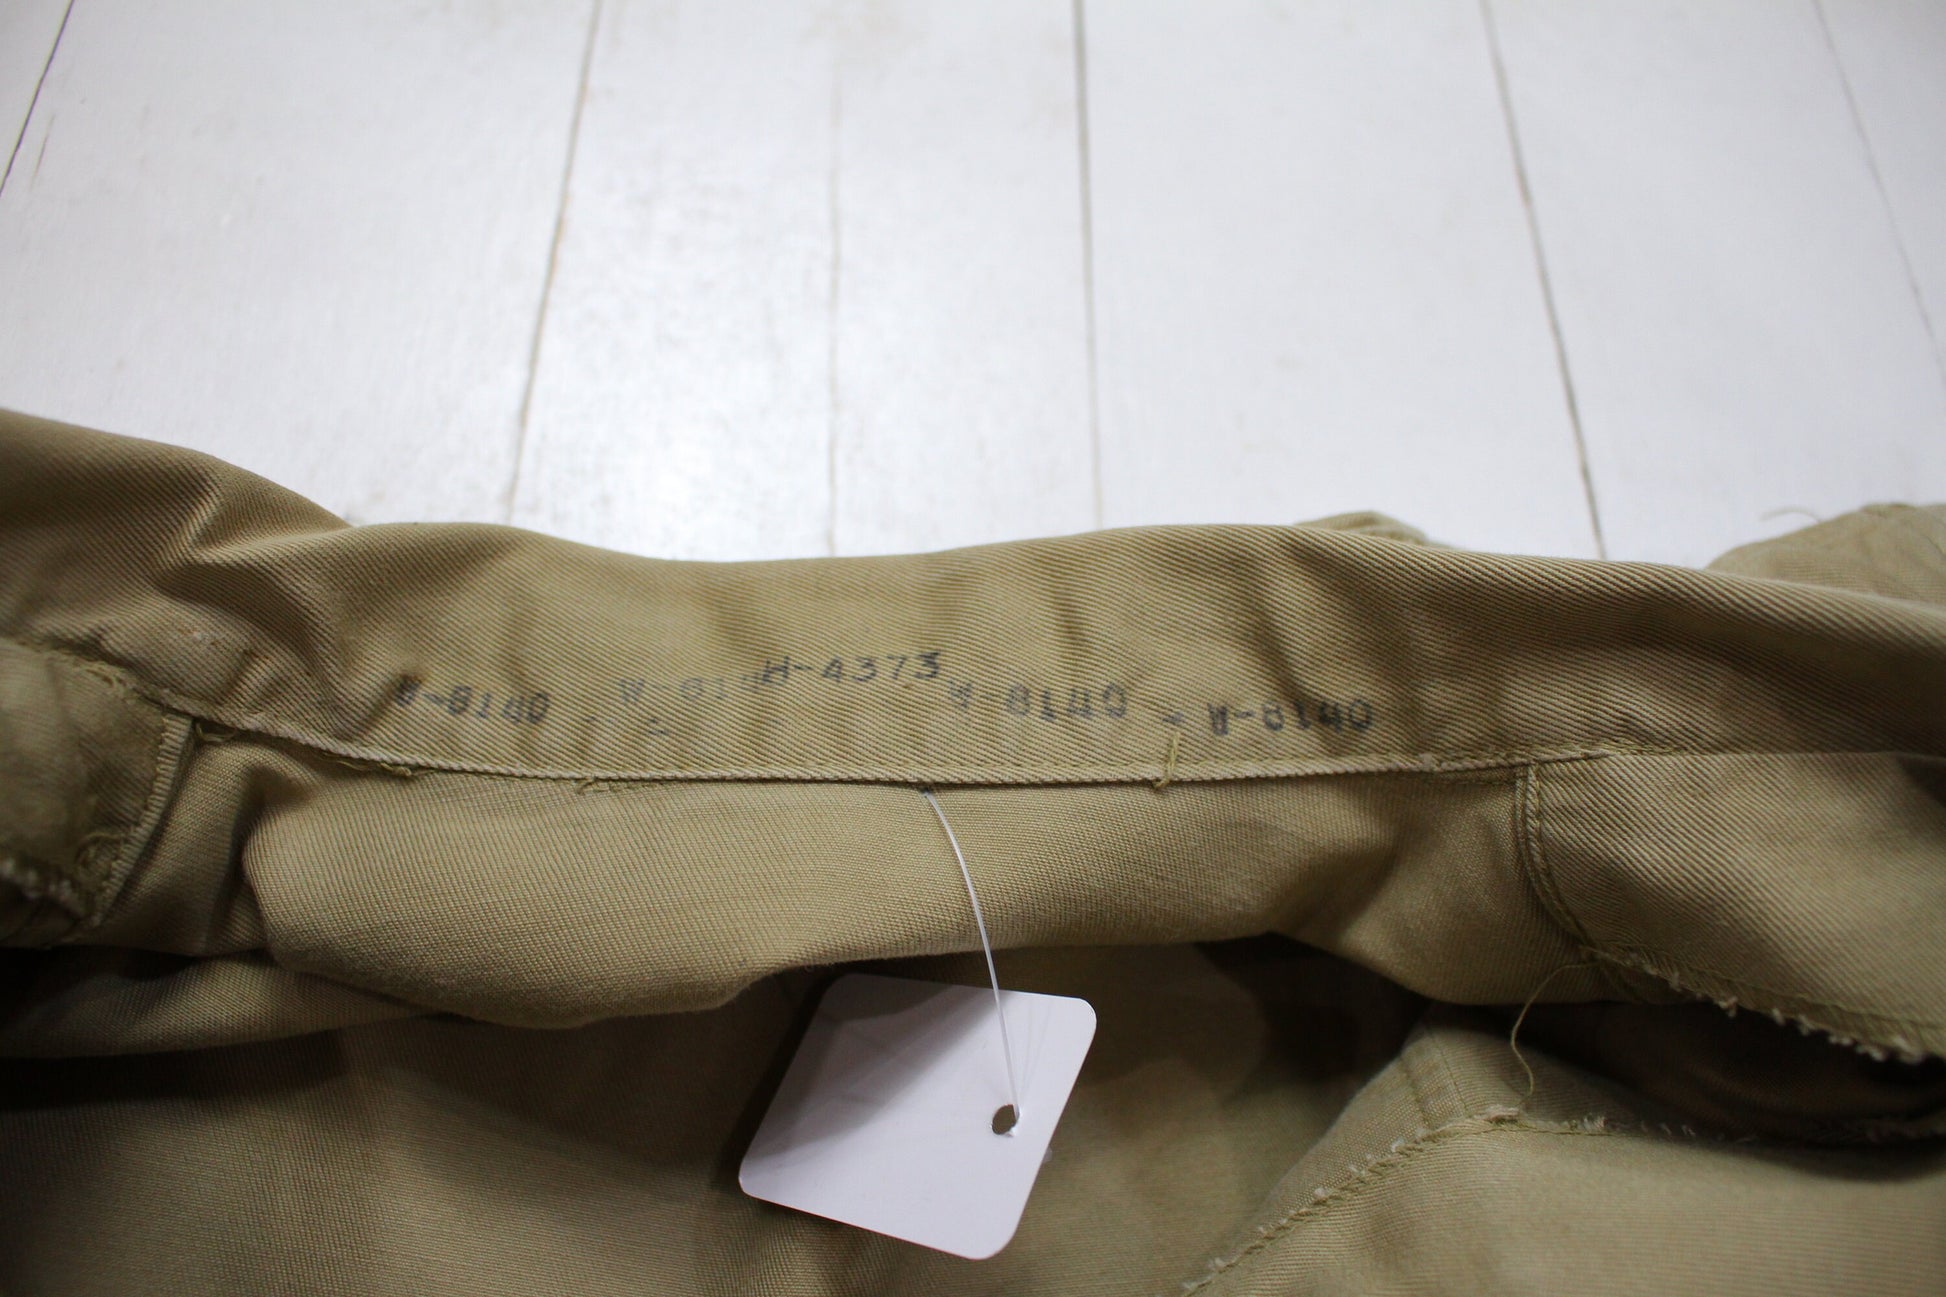 1950s US Military Shortsleeve Twill Khaki Uniform Shirt Size M